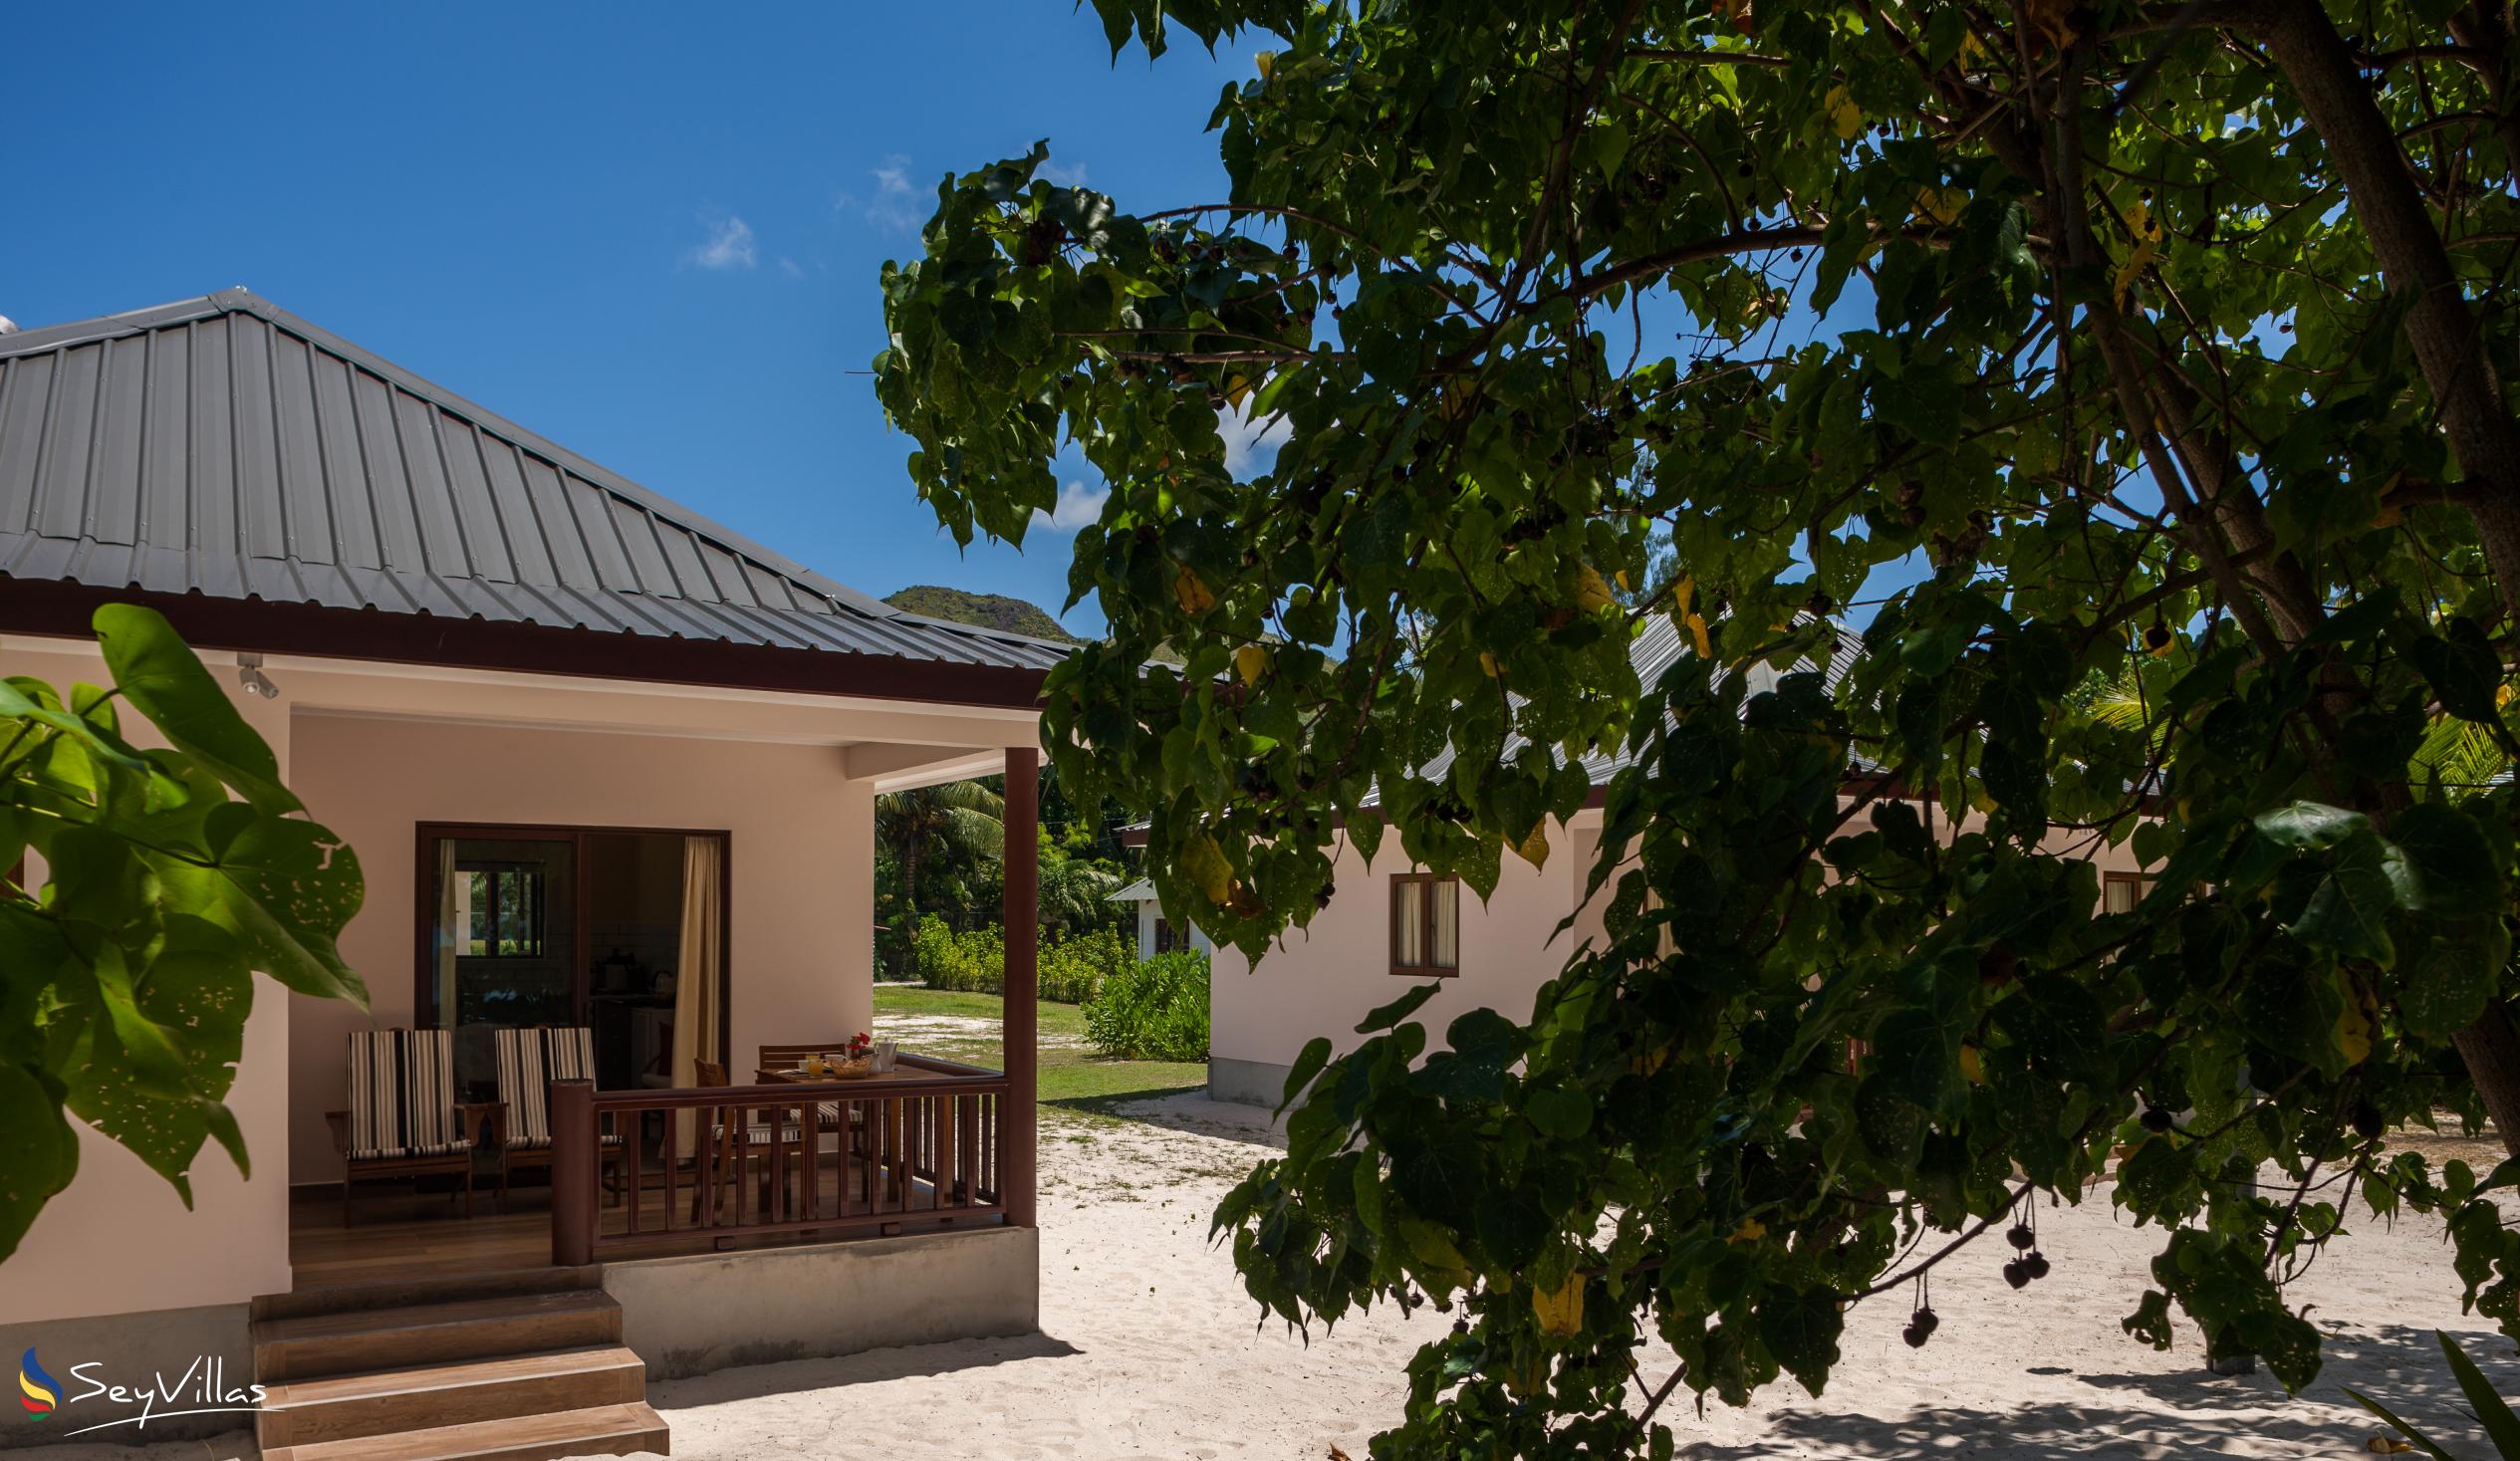 Foto 3: Villa Belle Plage - Aussenbereich - Praslin (Seychellen)